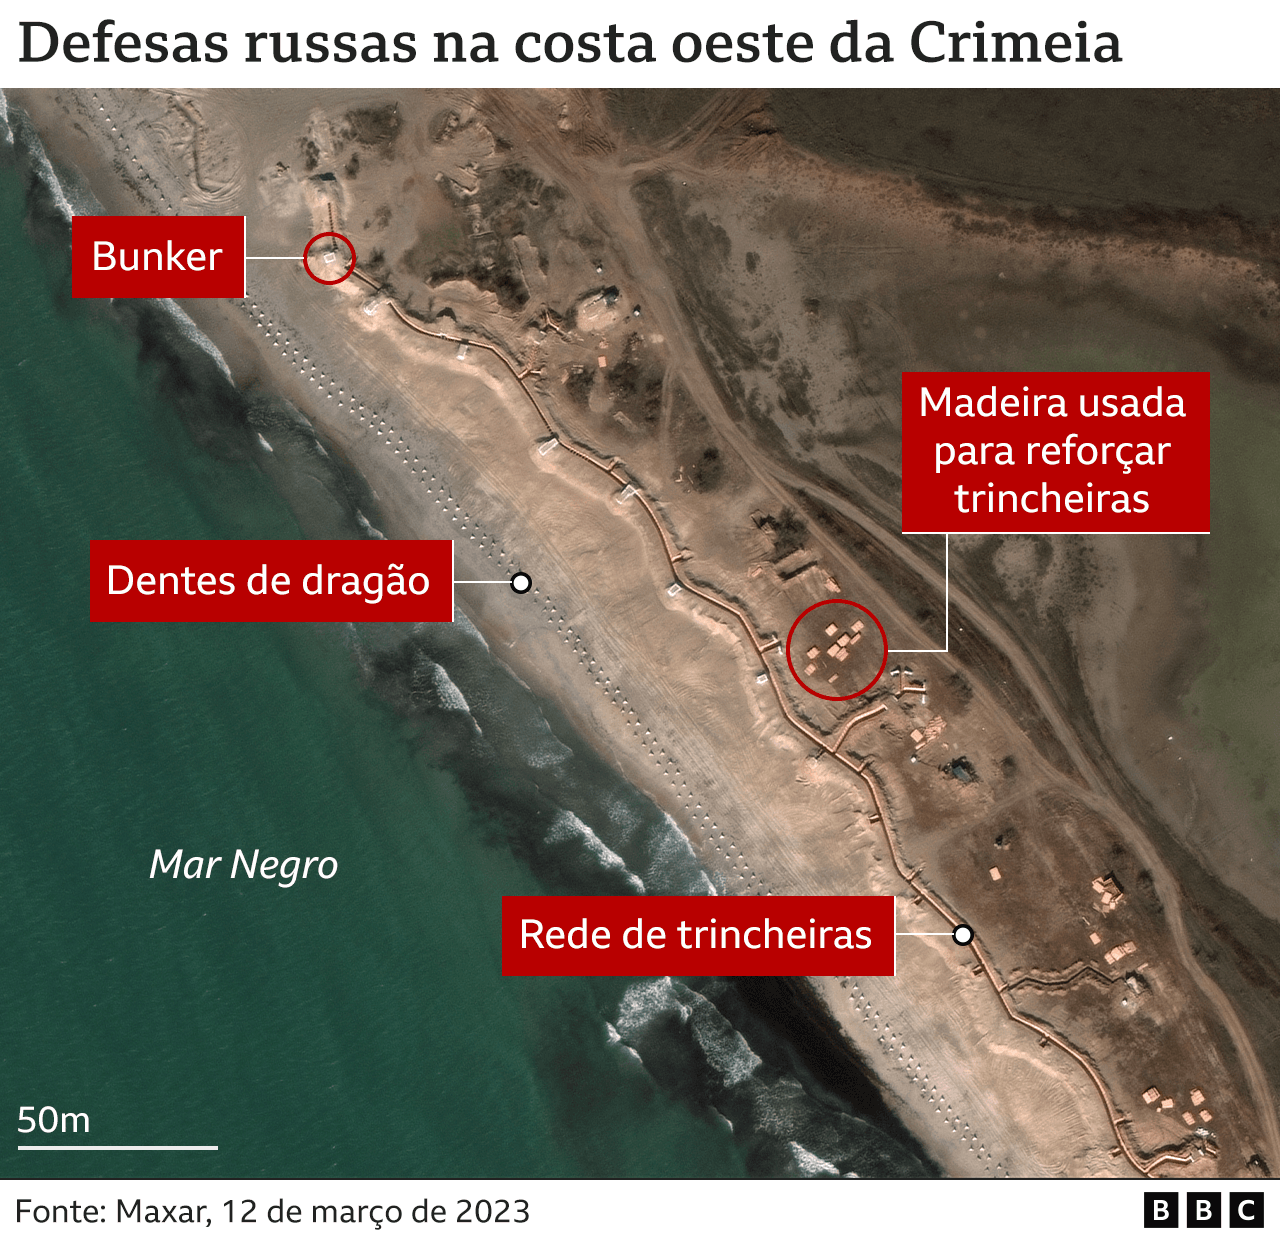 Imagem mostra defesas russas na costa oeste da Crimeia